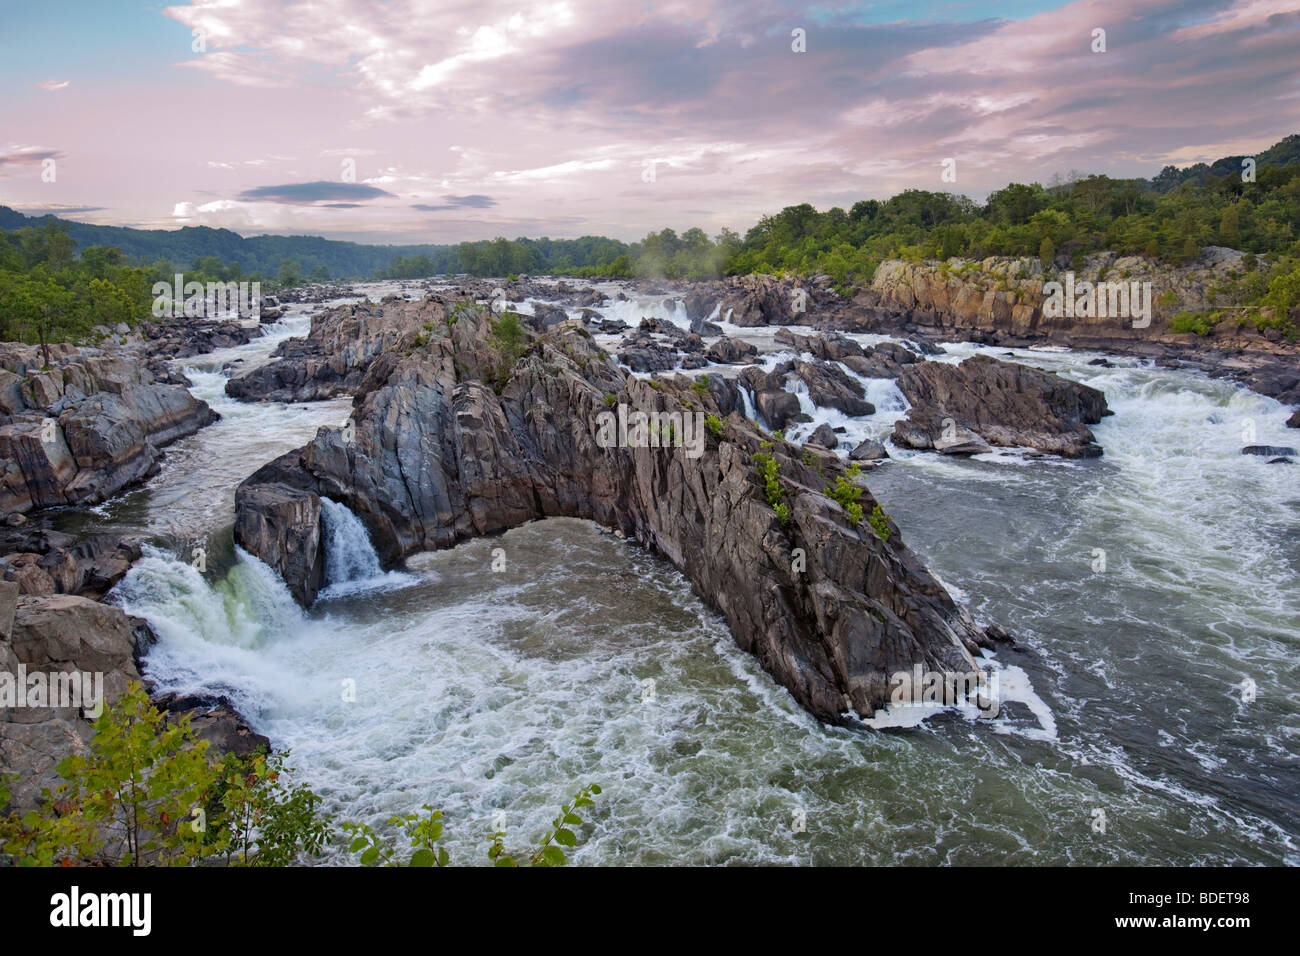 Die Great Falls des Potomac River. Sie sind die steilsten und spektakulärsten Falllinie Stromschnellen aller Flüsse in den USA Stockfoto